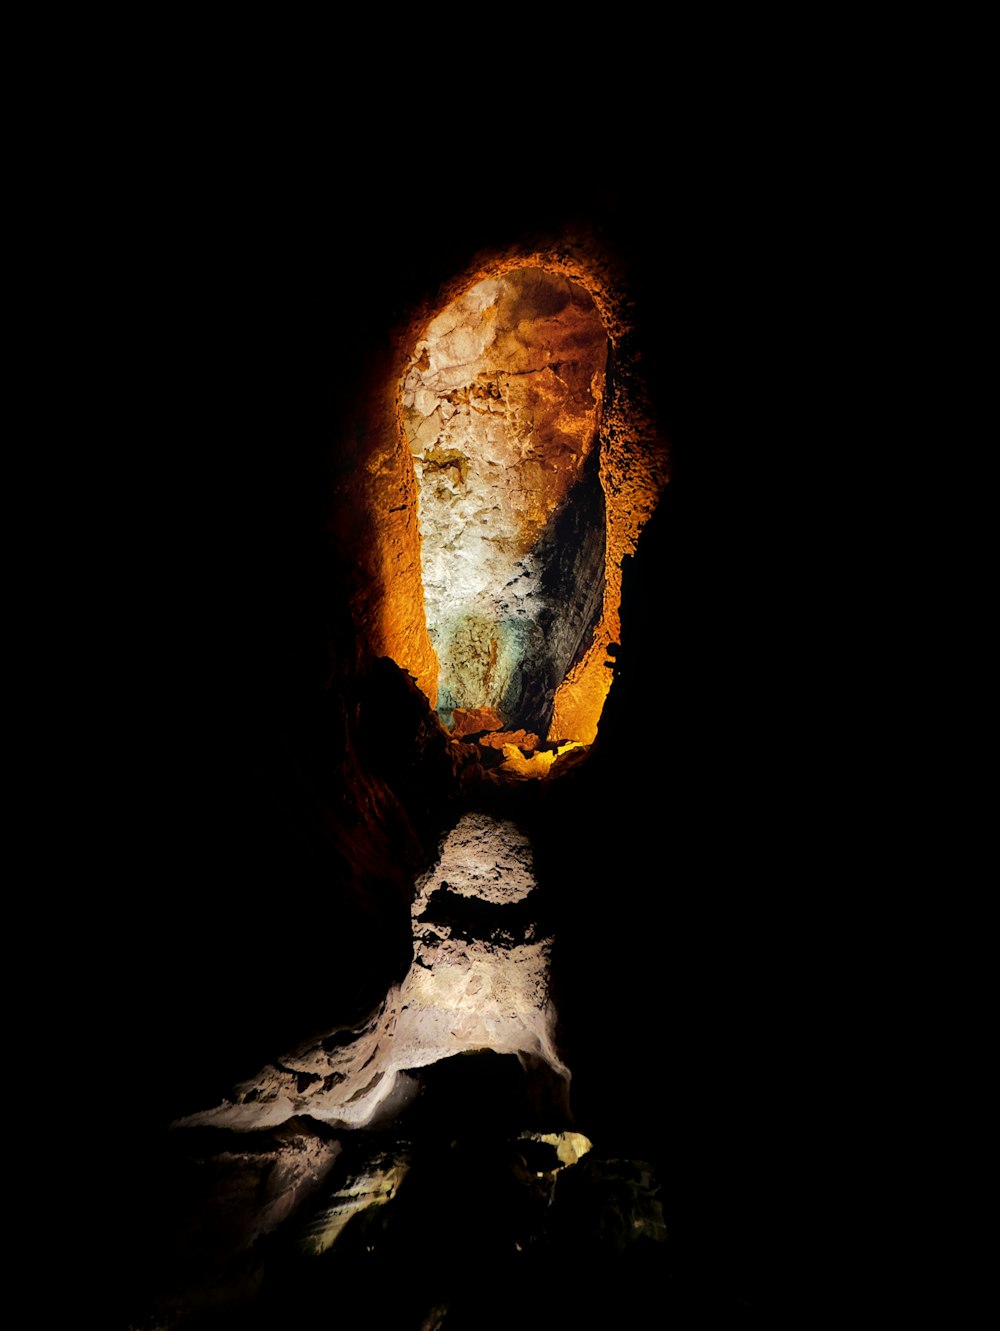 uma formação rochosa no meio de uma caverna escura